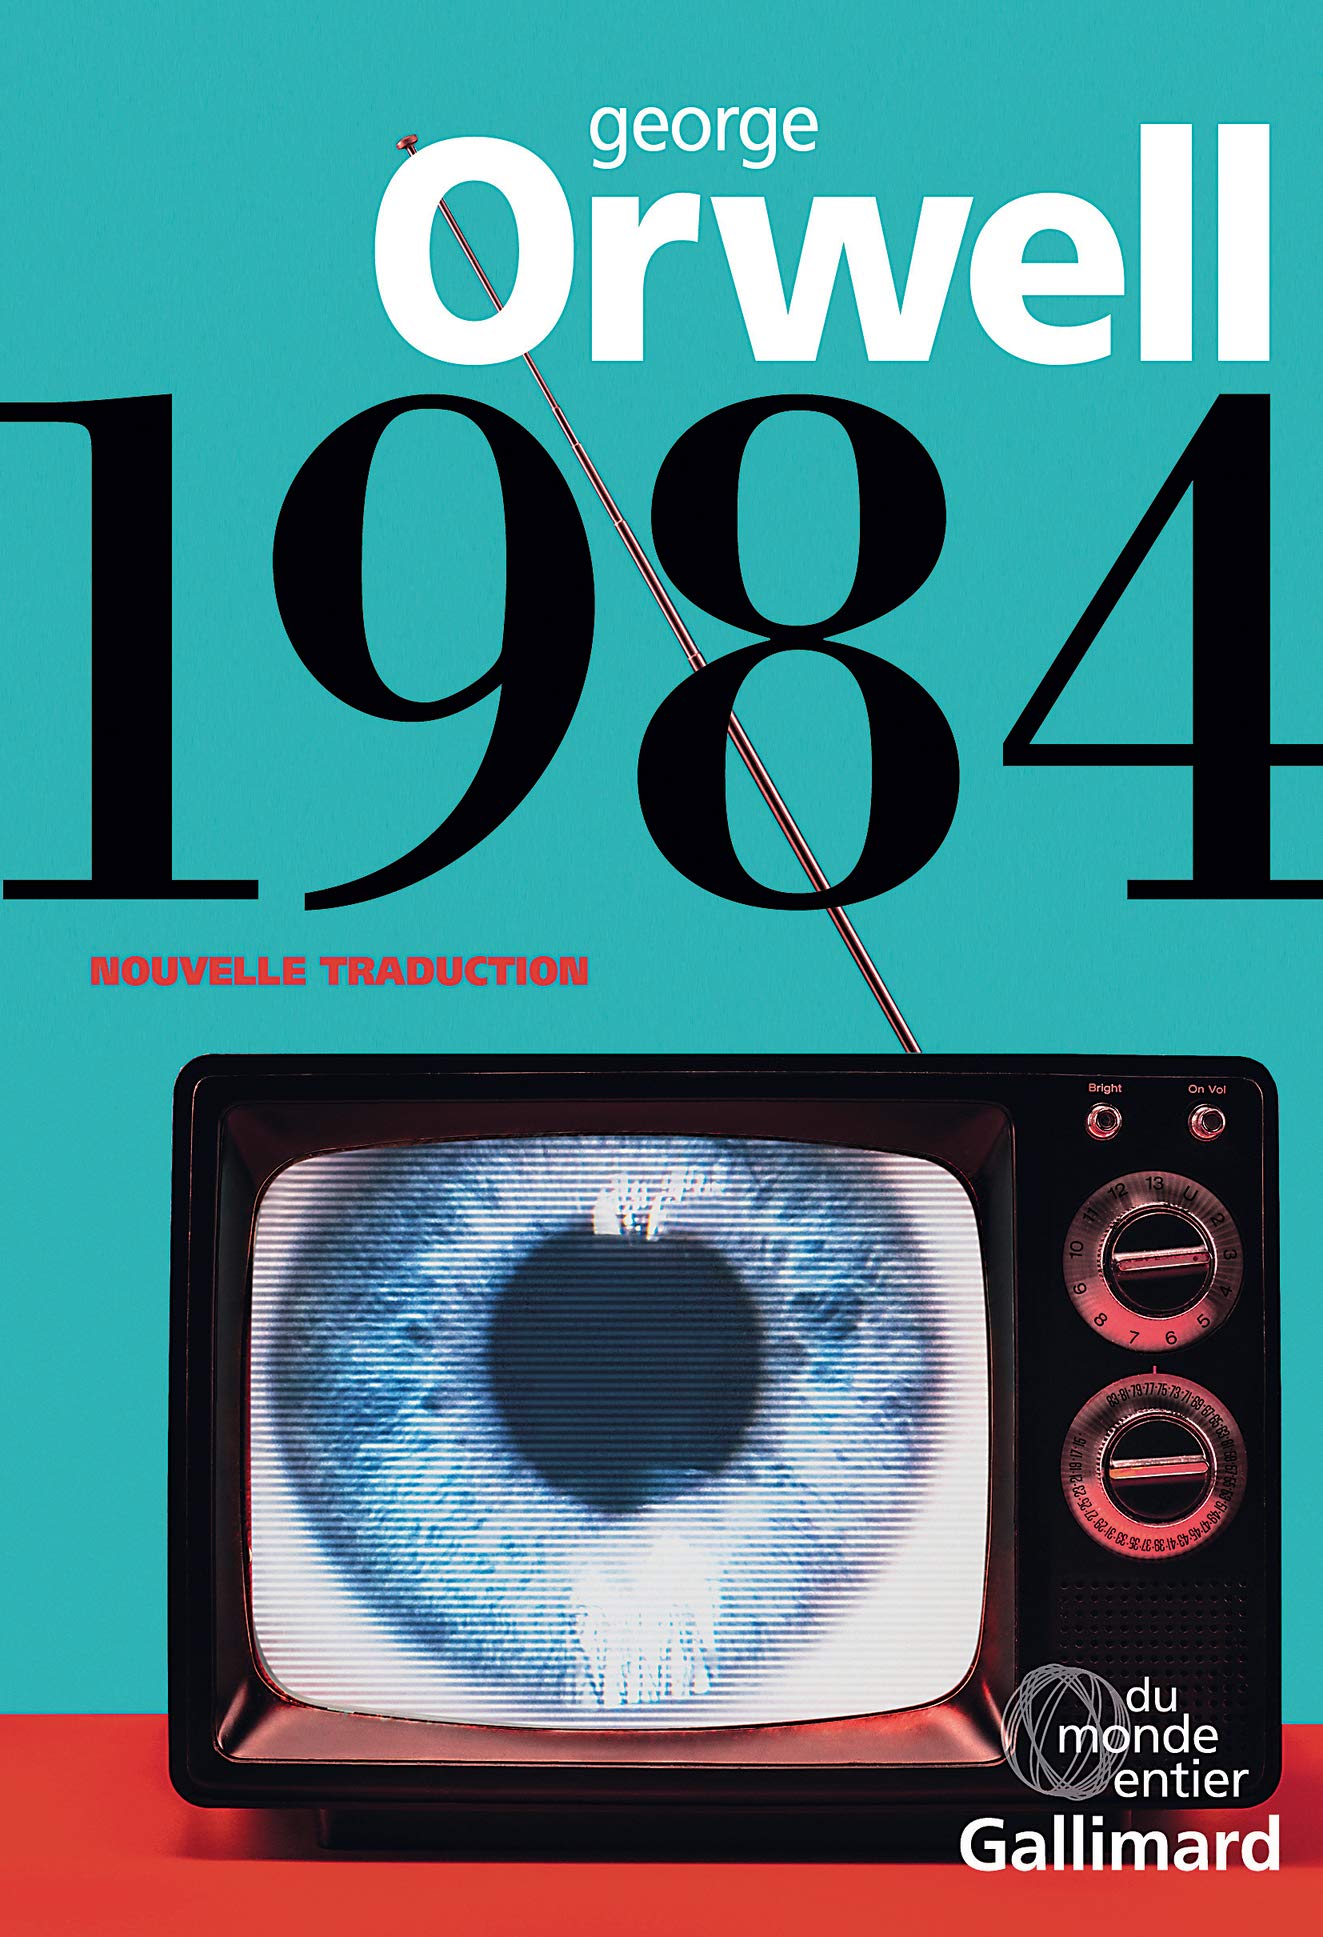 Quel est le message du livre 1984 ?